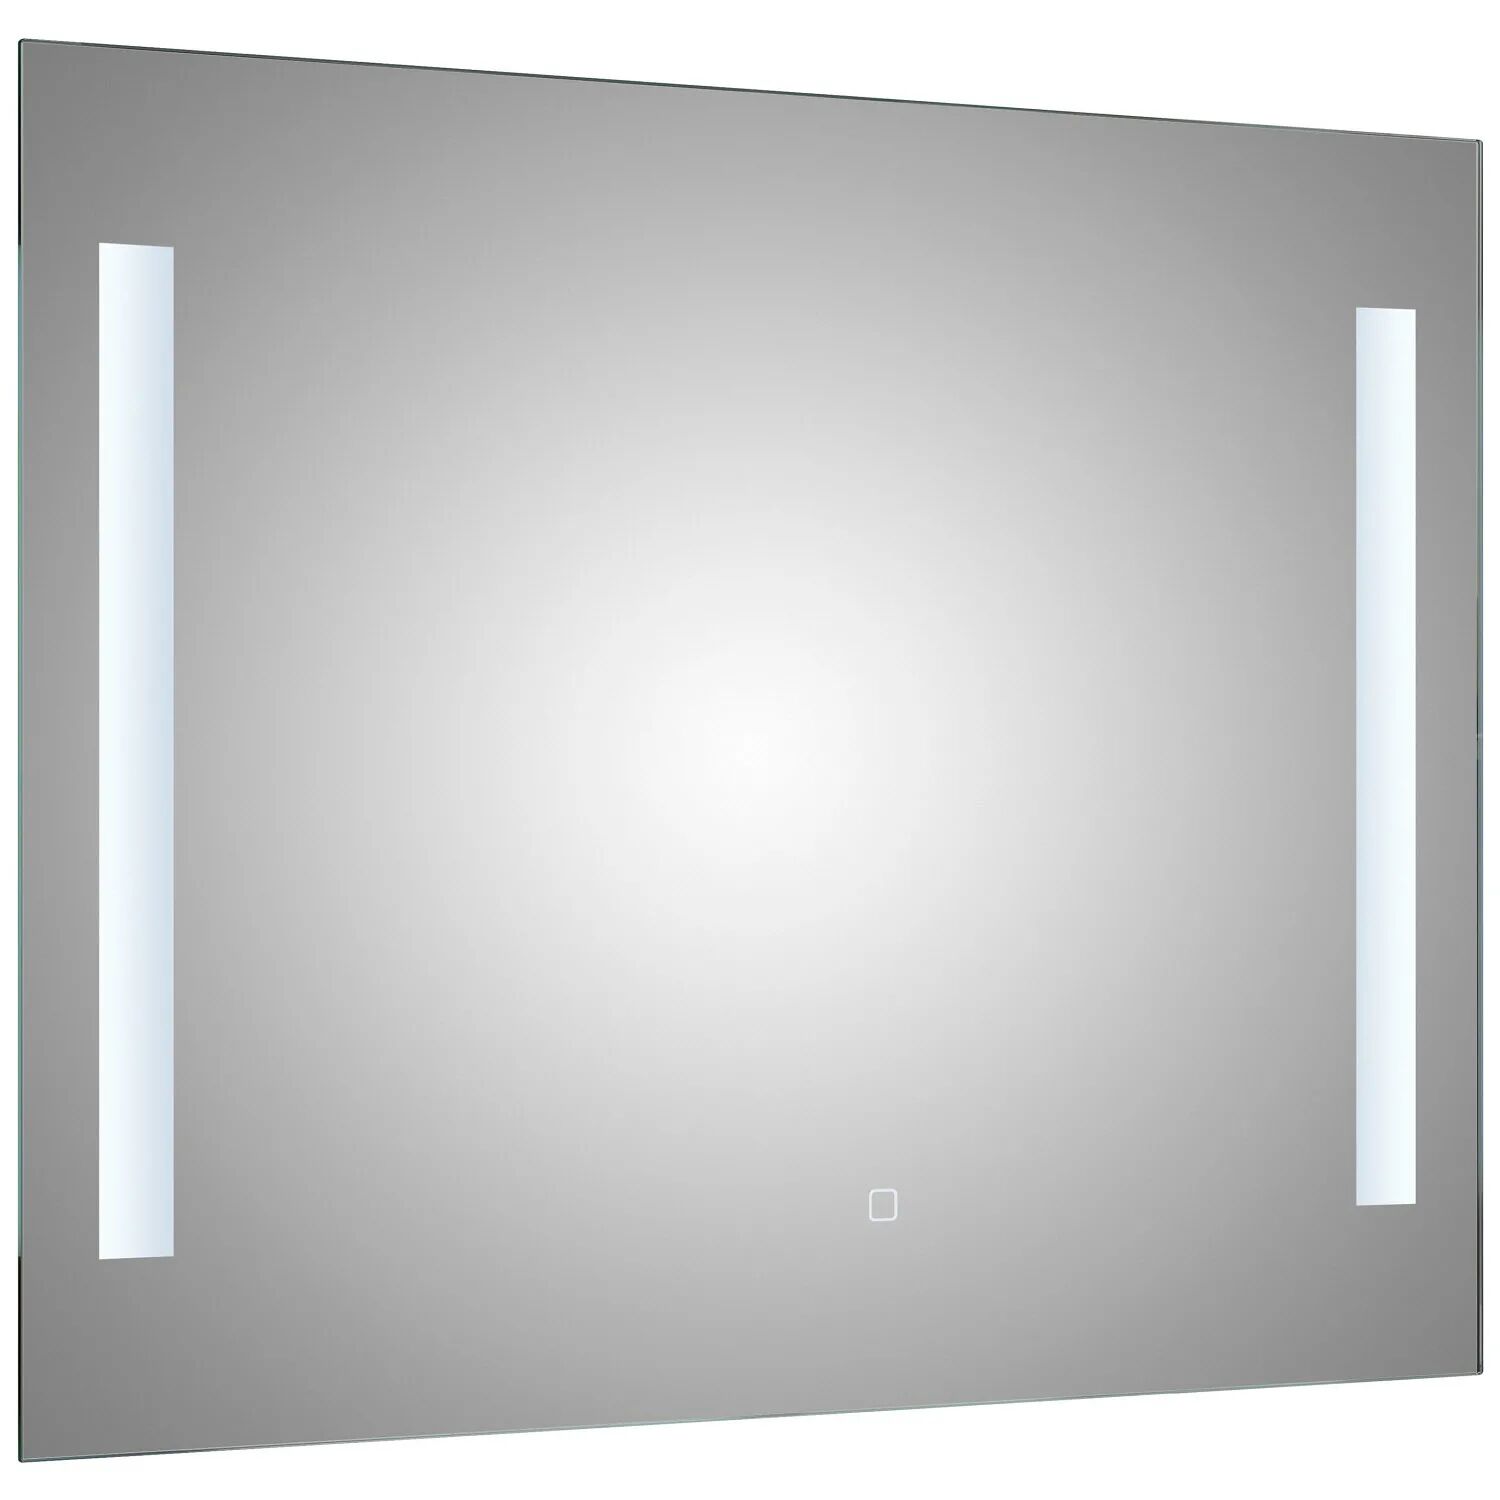 Pelipal S34 LED Spiegel 90 x 70 cm Lichtausschnitt links und rechts Neutrale Flächenspiegel B: 90 T: 3 H: 70 cm aluminium matt 980.839.020